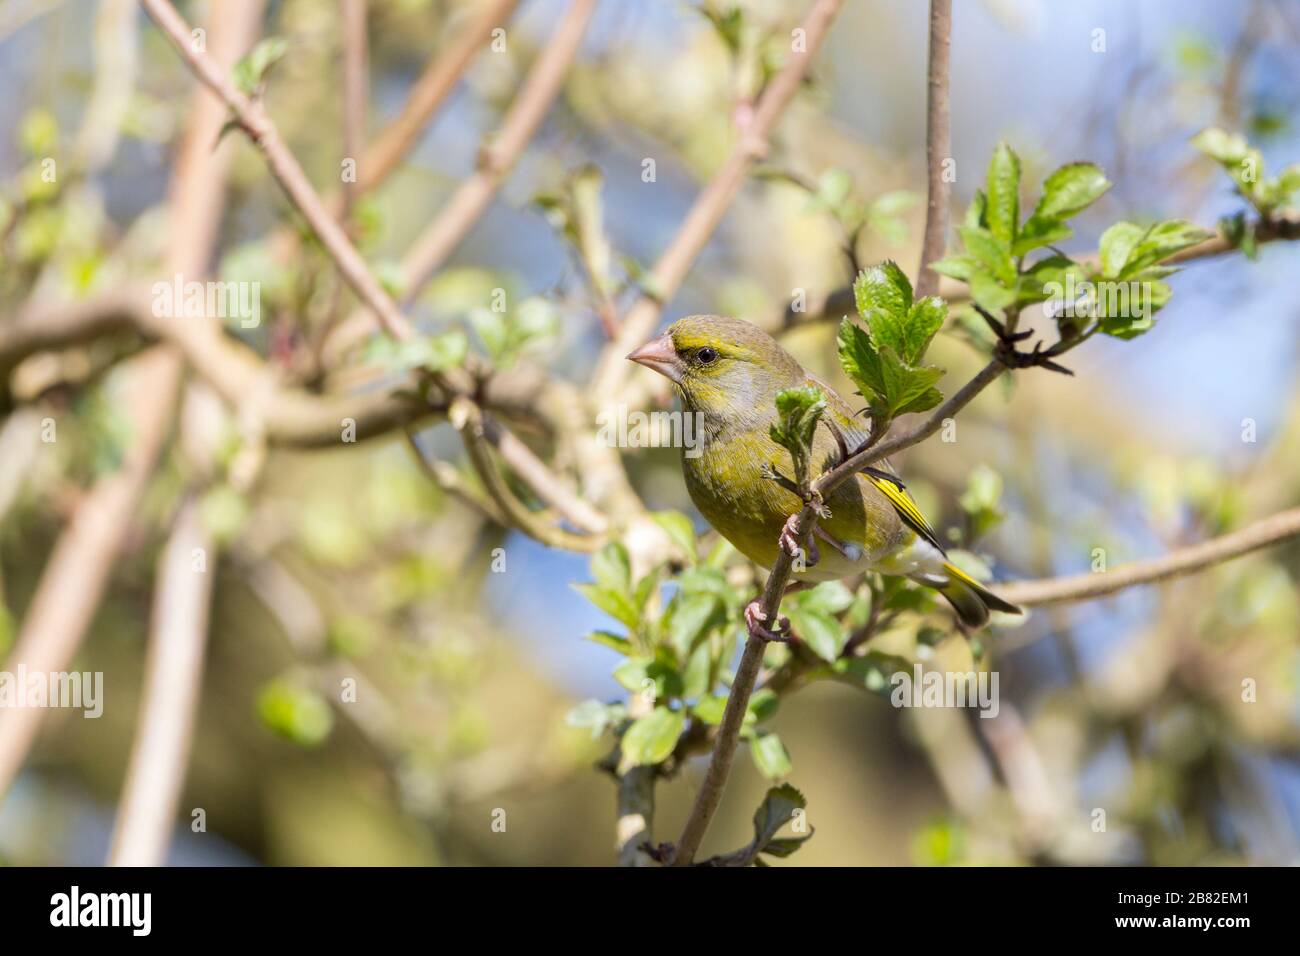 Verde finch (Carduelis chloris) pesante becco conico testa grande boscato coda verde oliva, più brillante schiena e groppa giallo brillante su ali e coda Foto Stock